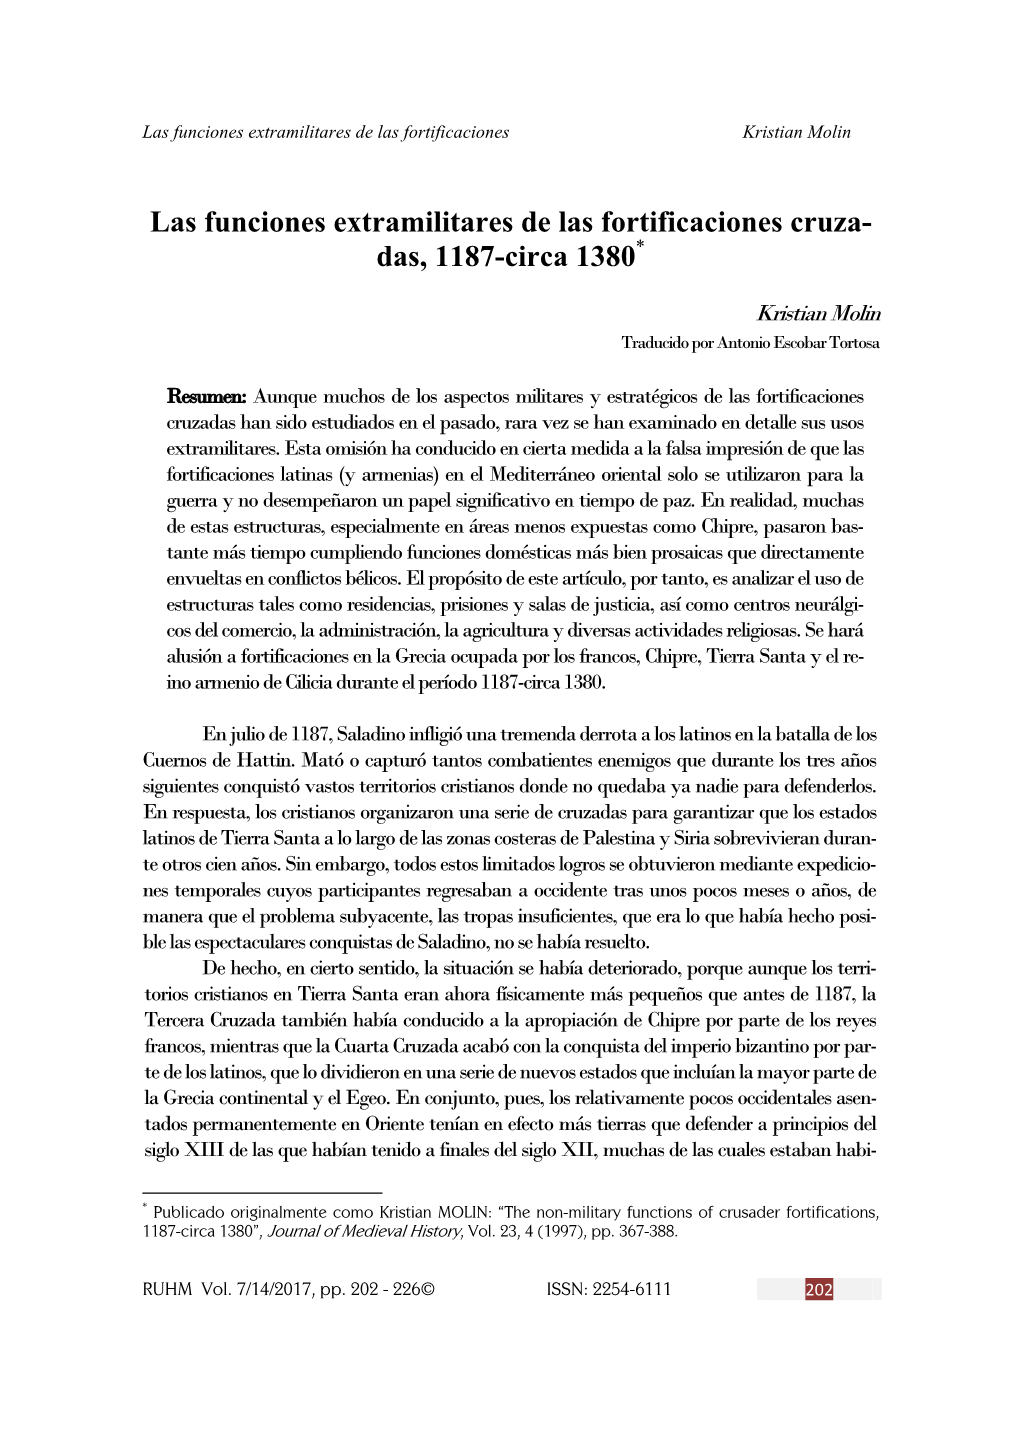 Las Funciones Extramilitares De Las Fortificaciones Cruza- Das, 1187-Circa 1380*